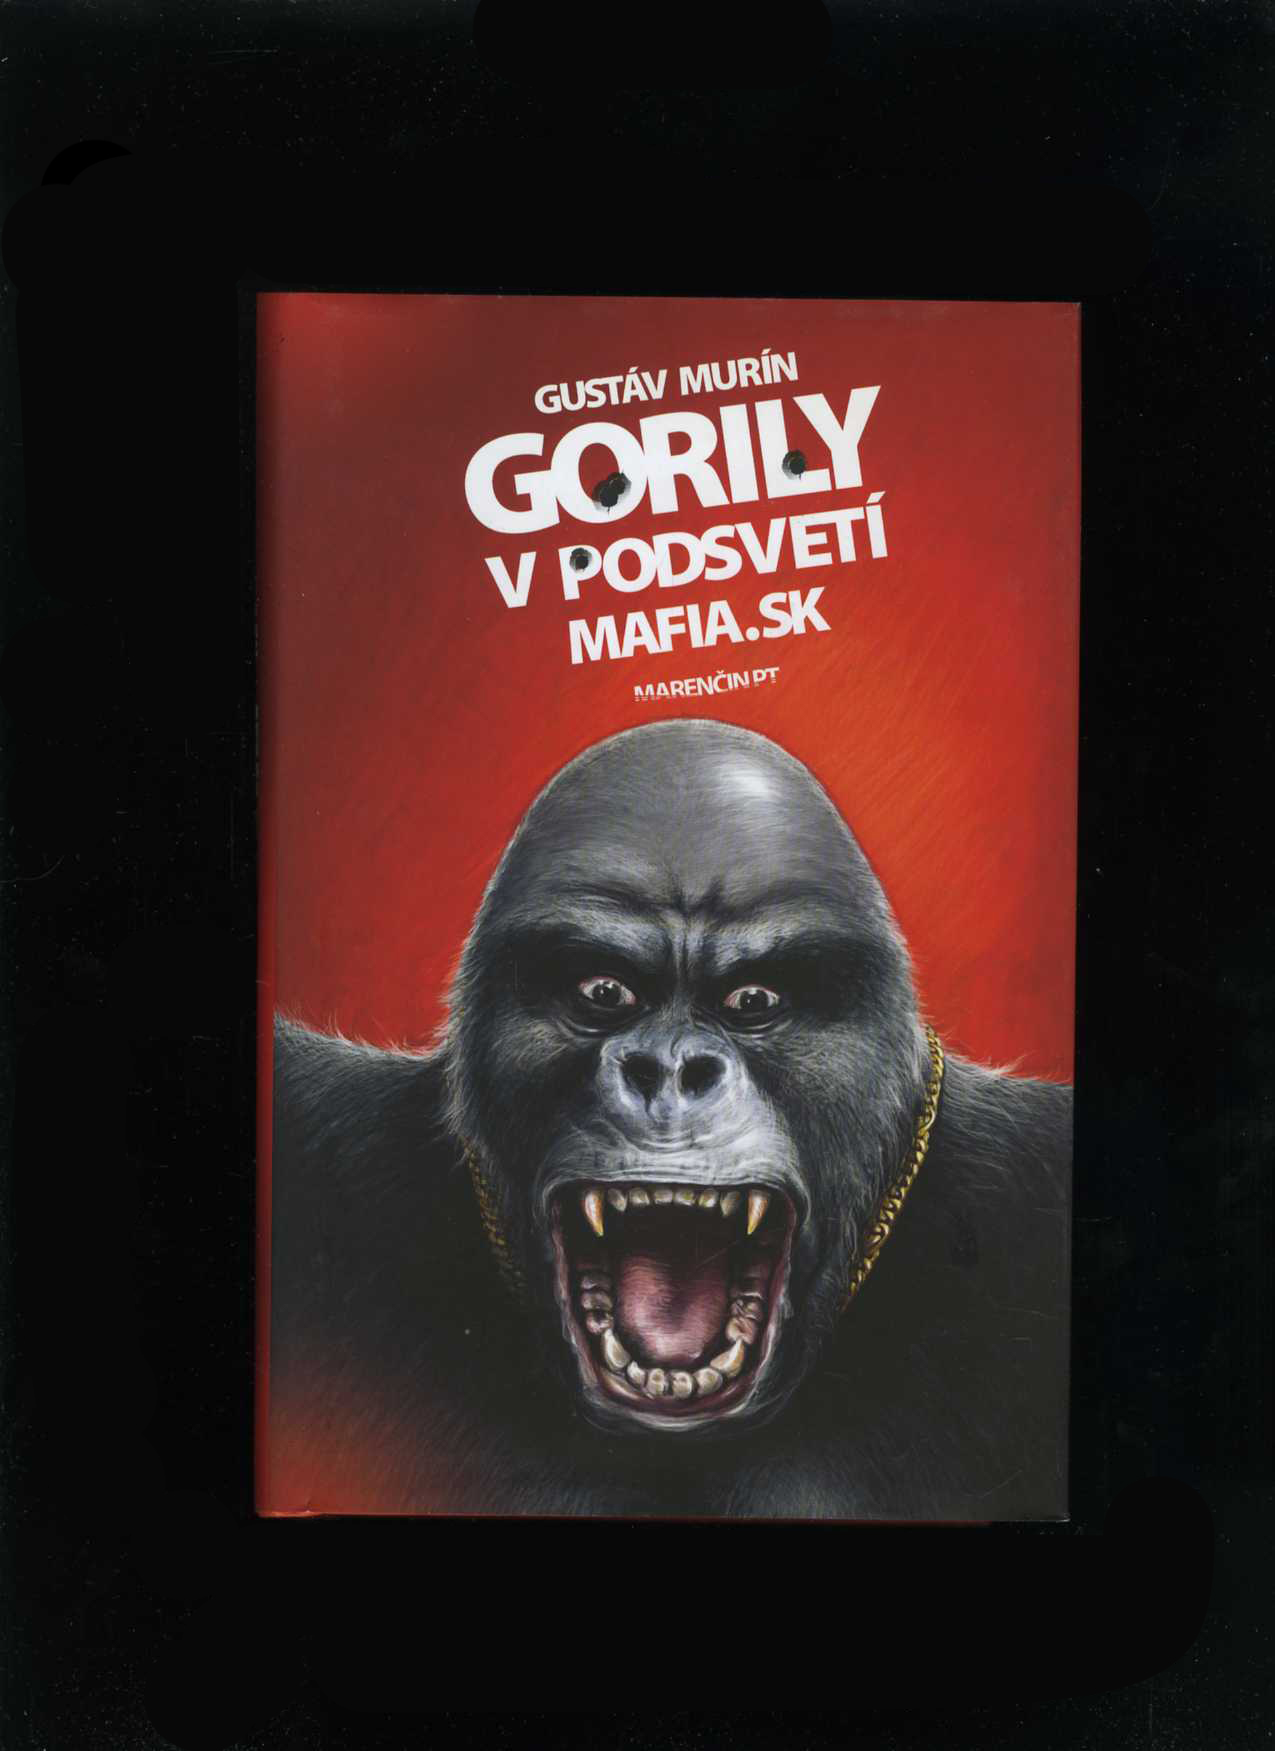 Gorily v podsvetí (Gustáv Murín)